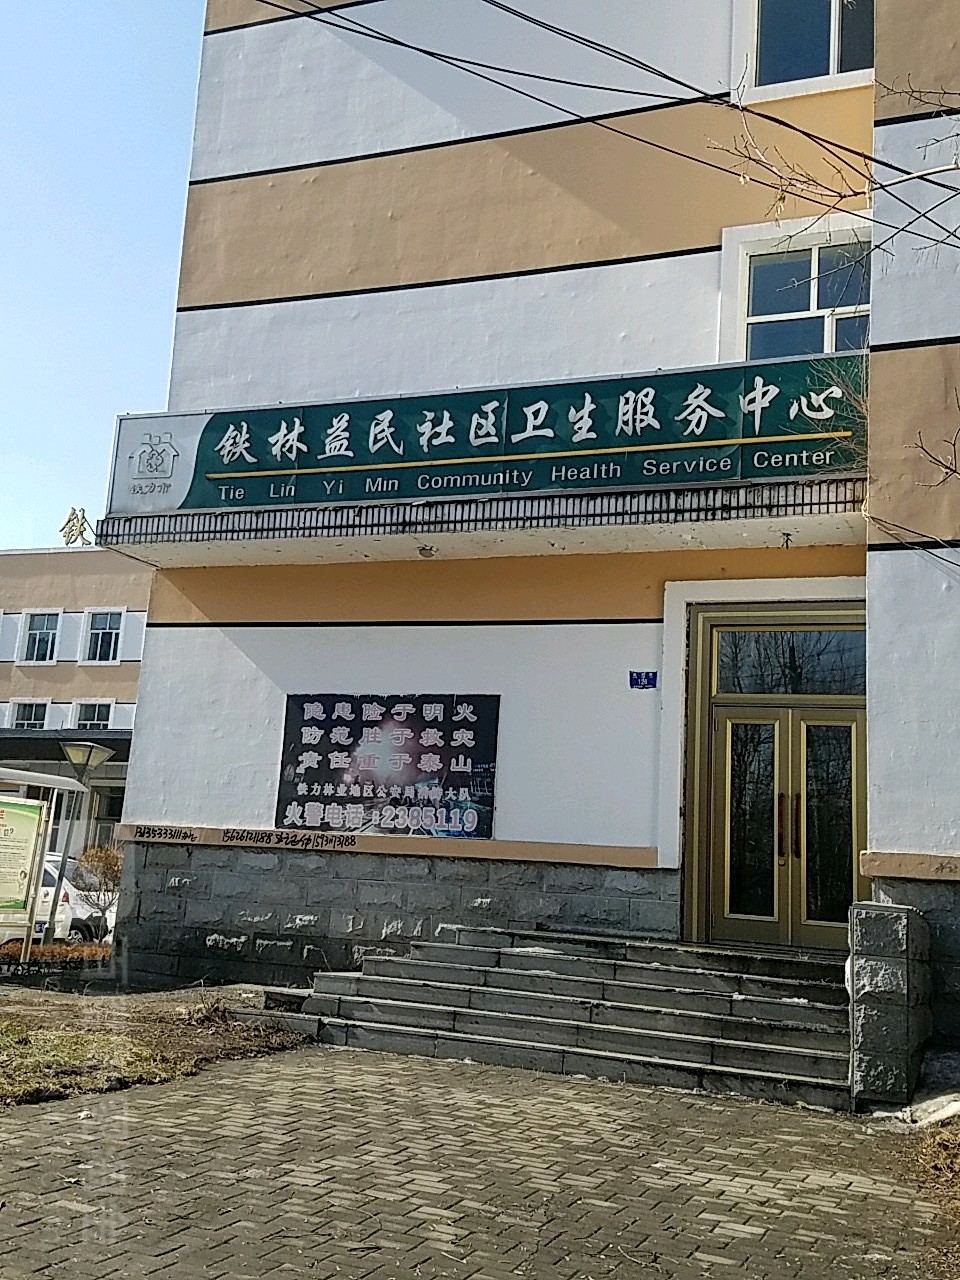 铁林益民社区卫生服务中心